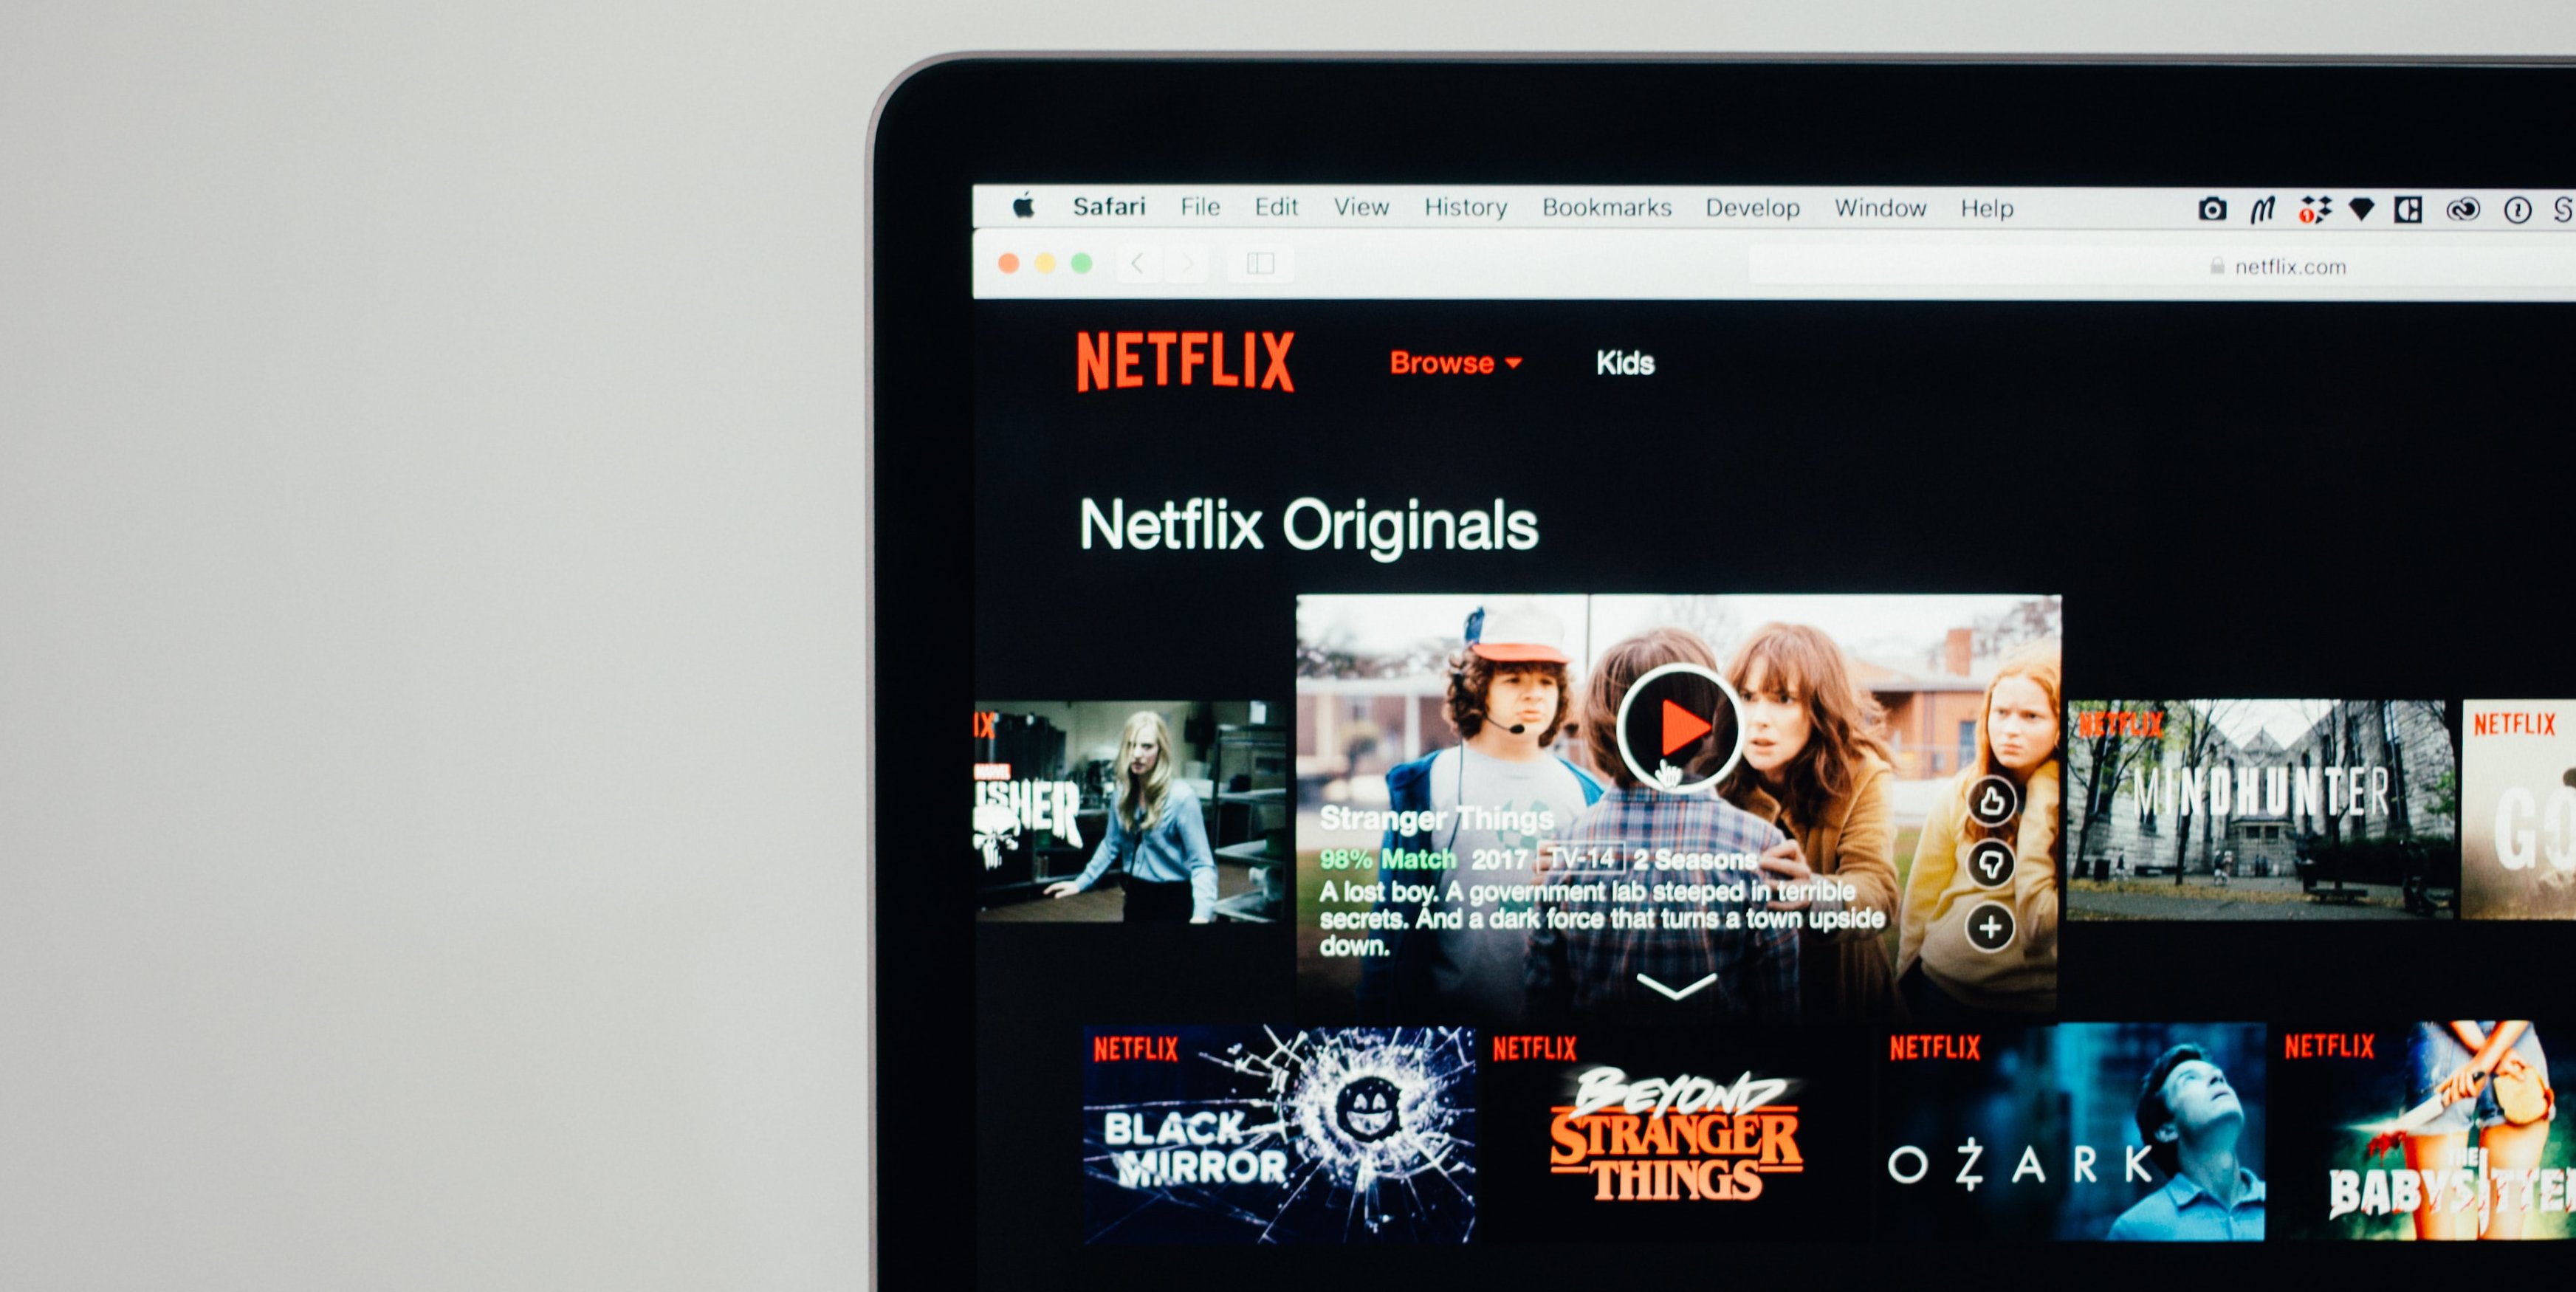 Netflix prueba una función insólita: reproducir las películas a mayor velocidad